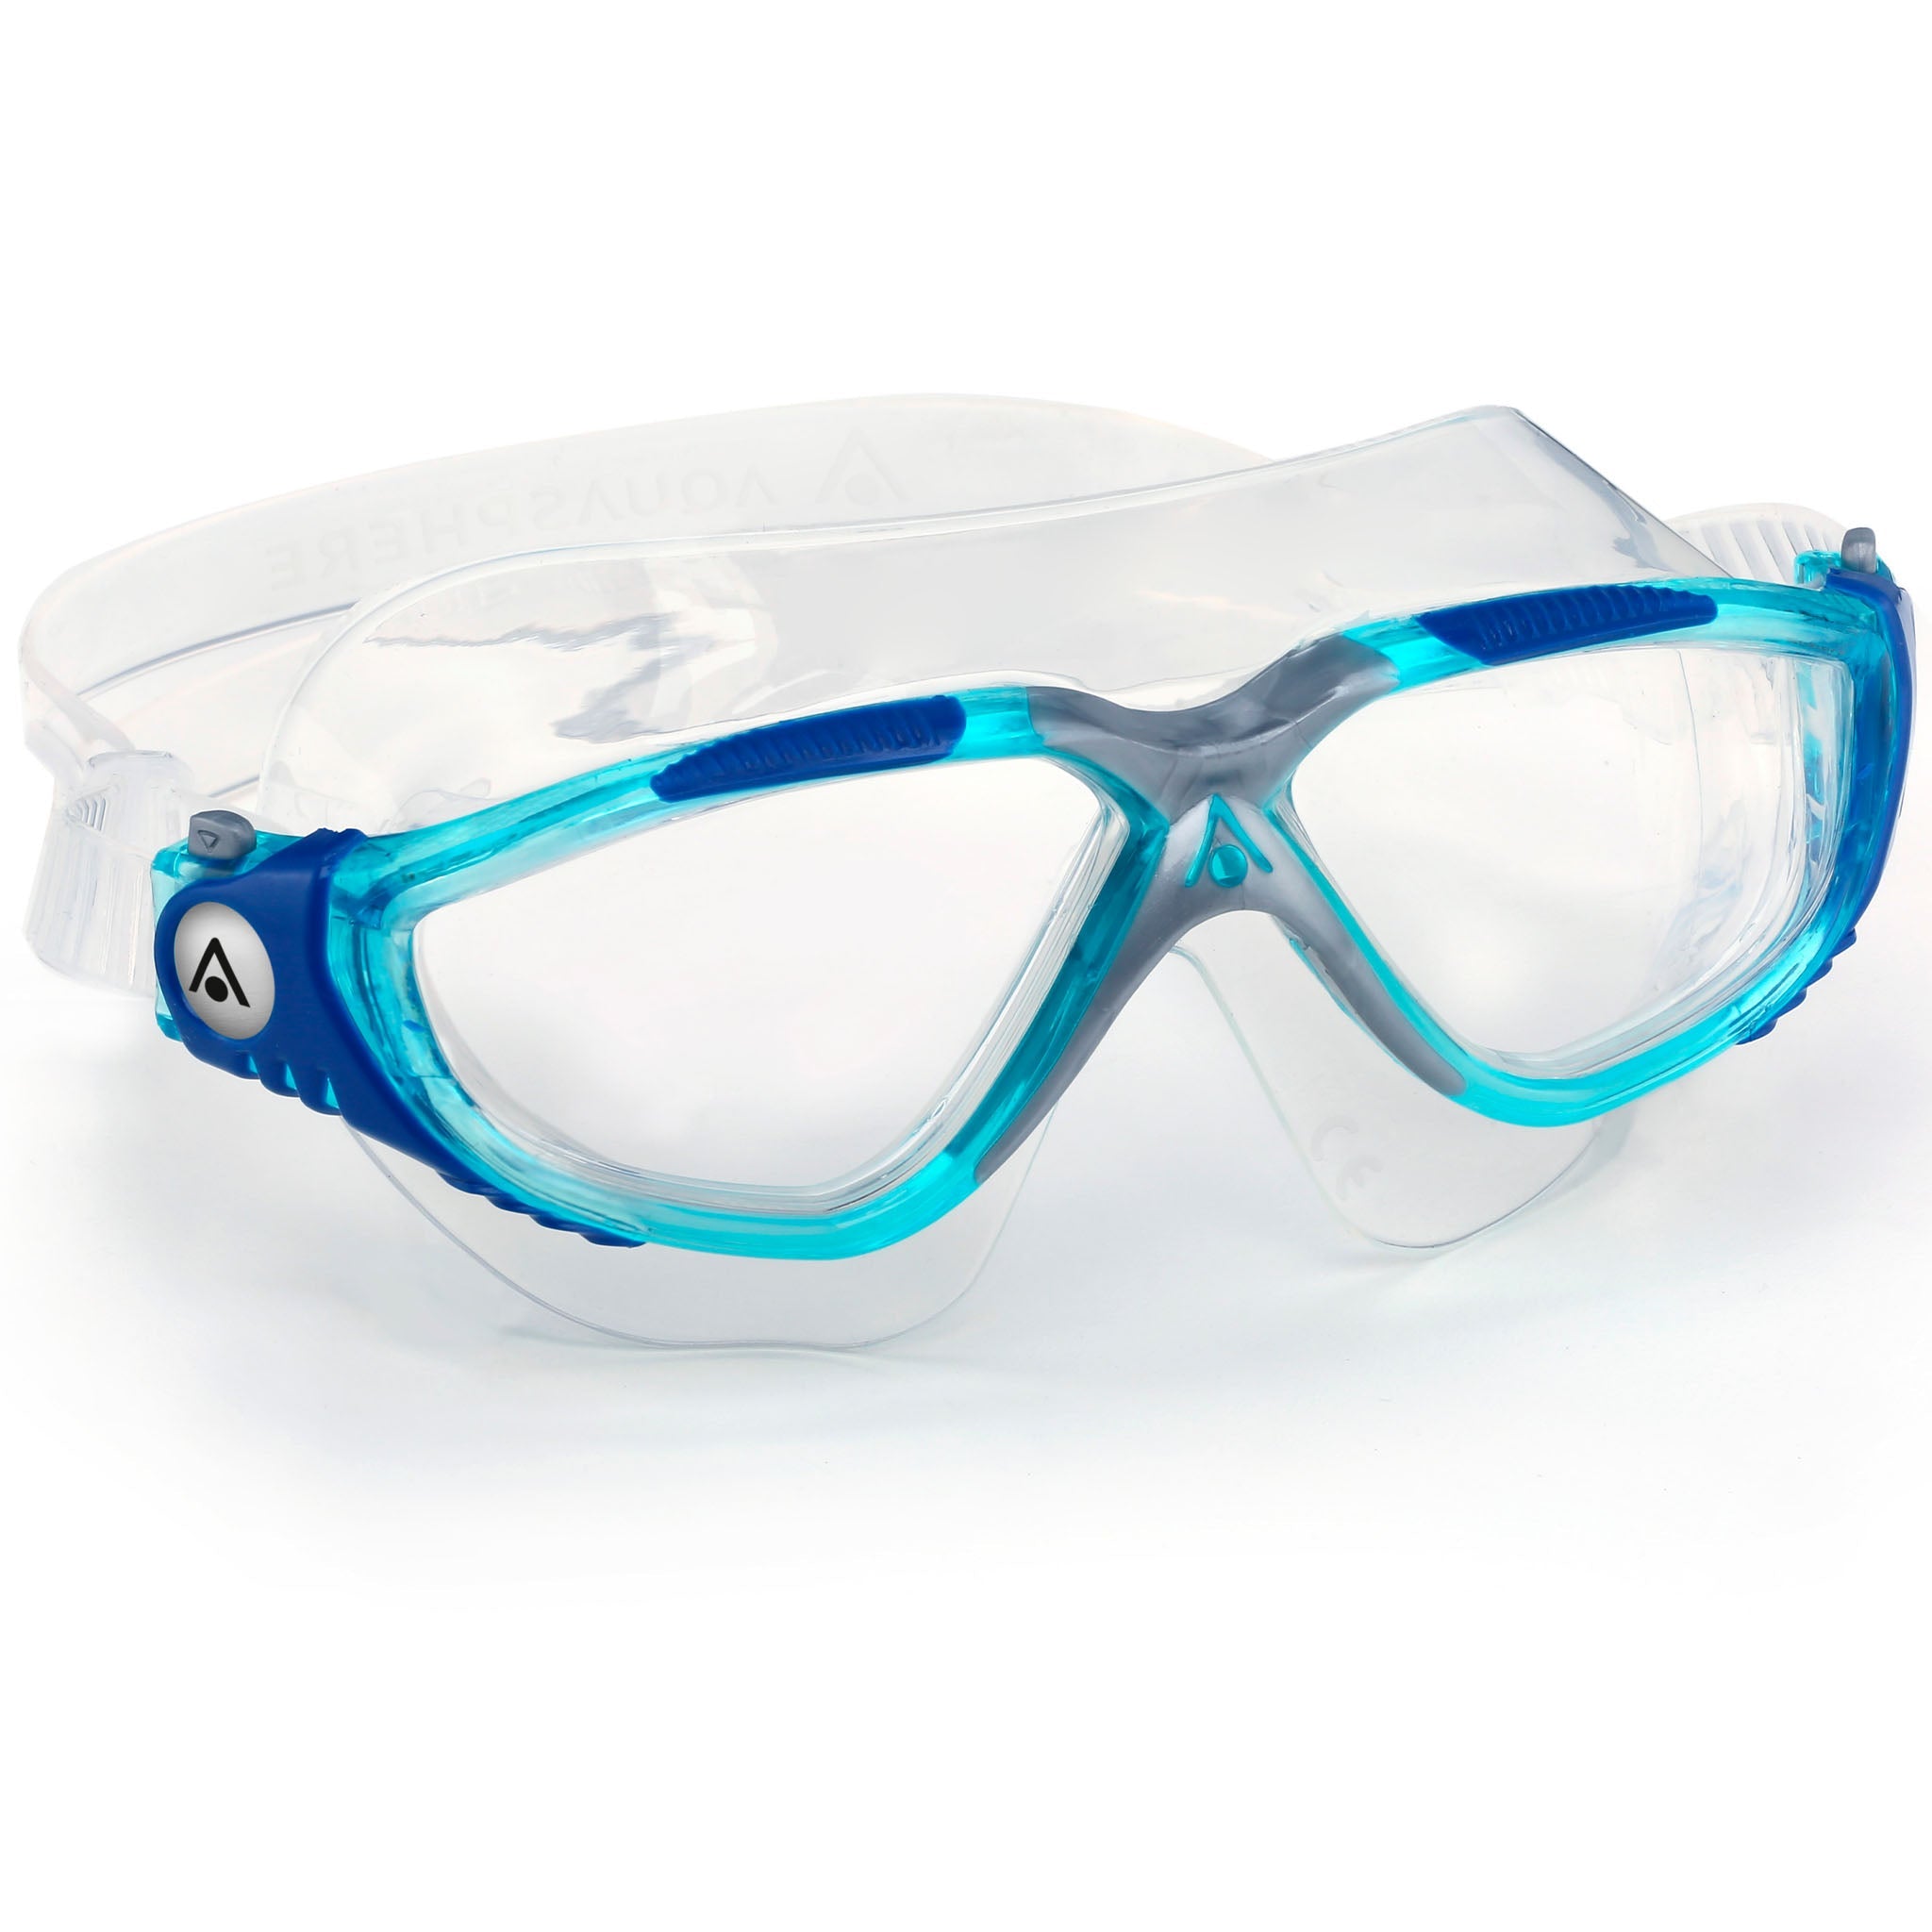 Aquasphere Vista Swim Goggles Mask - Aqua Blue Side view